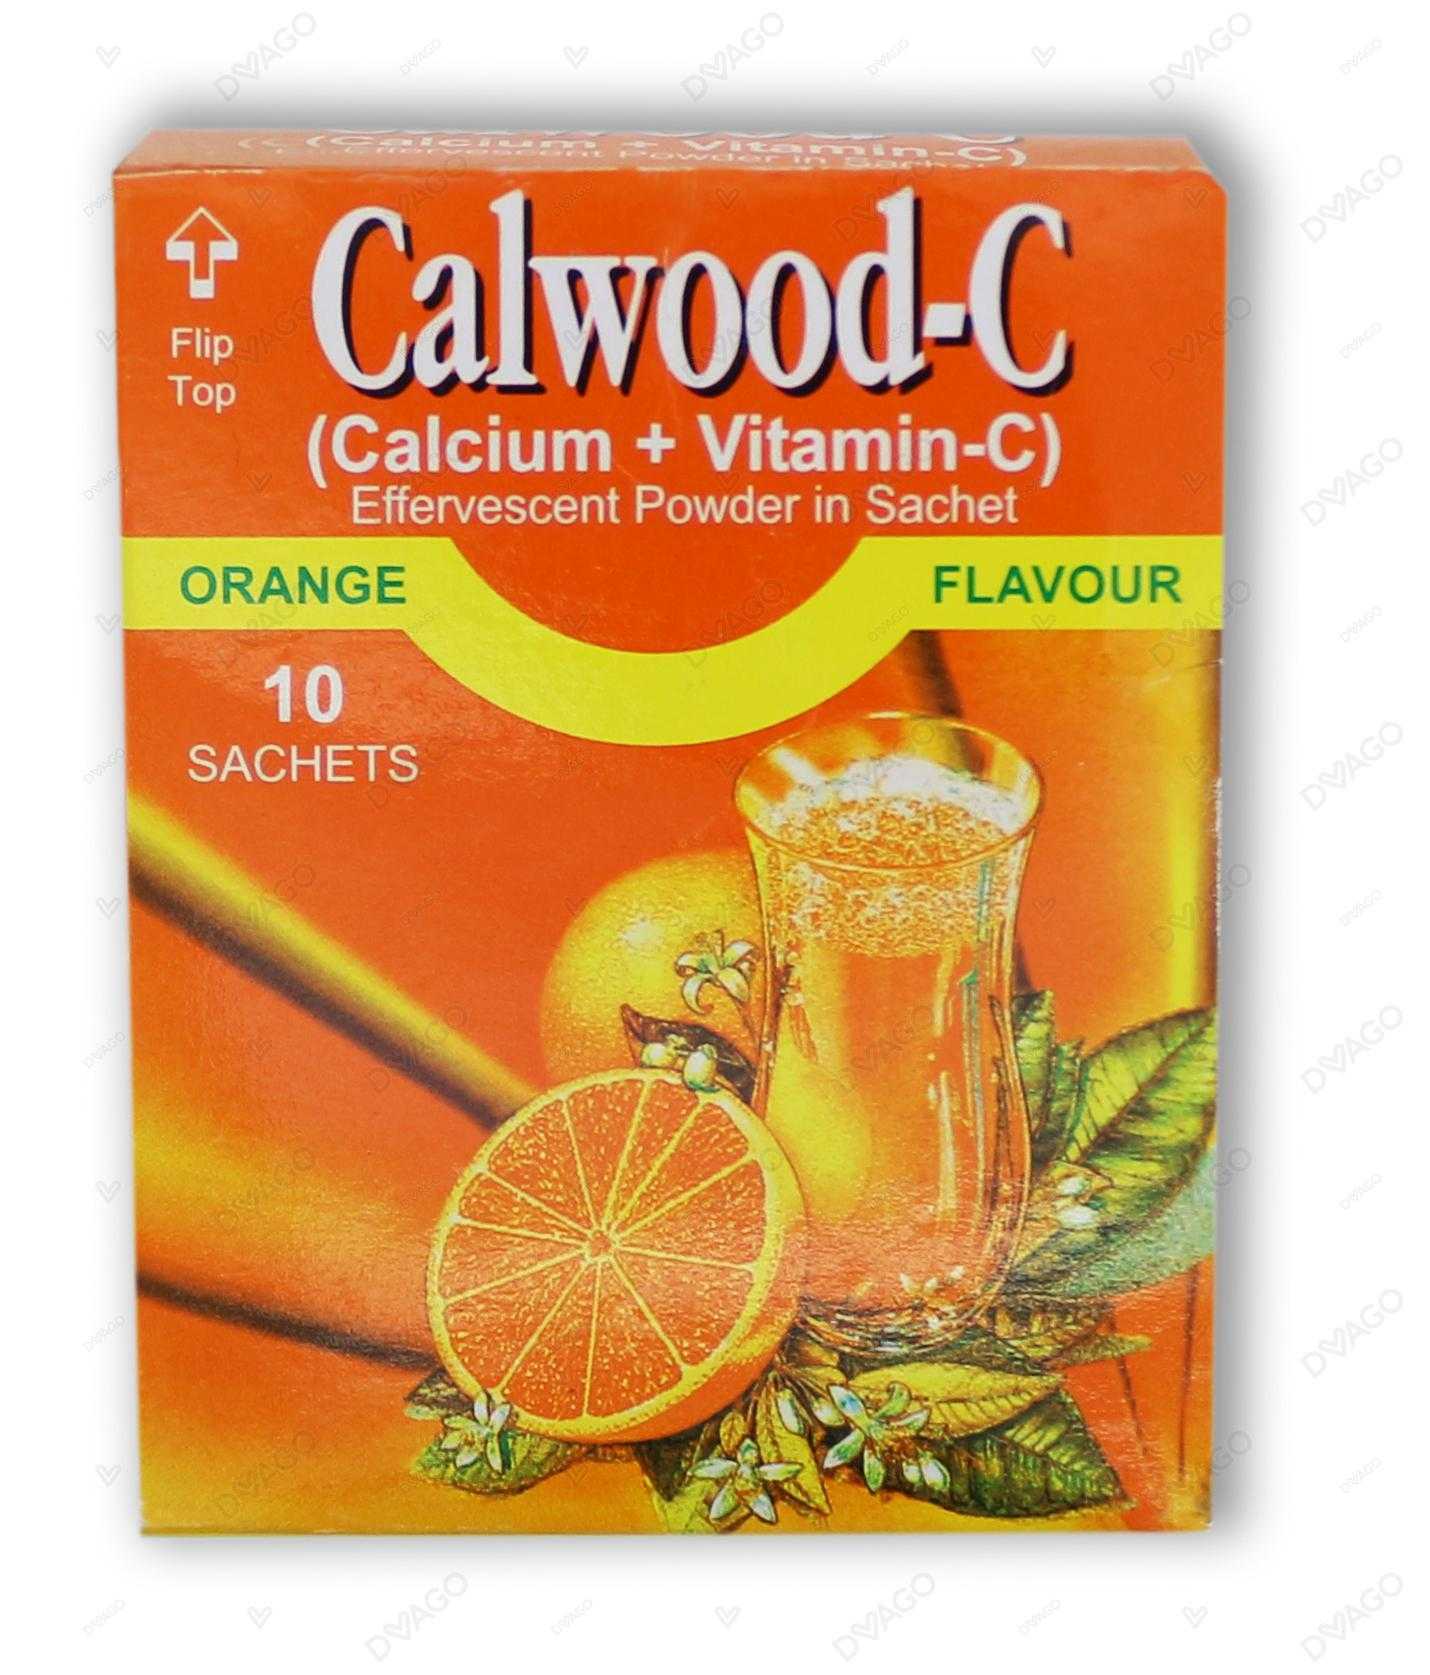 calwood-c sachets 7g